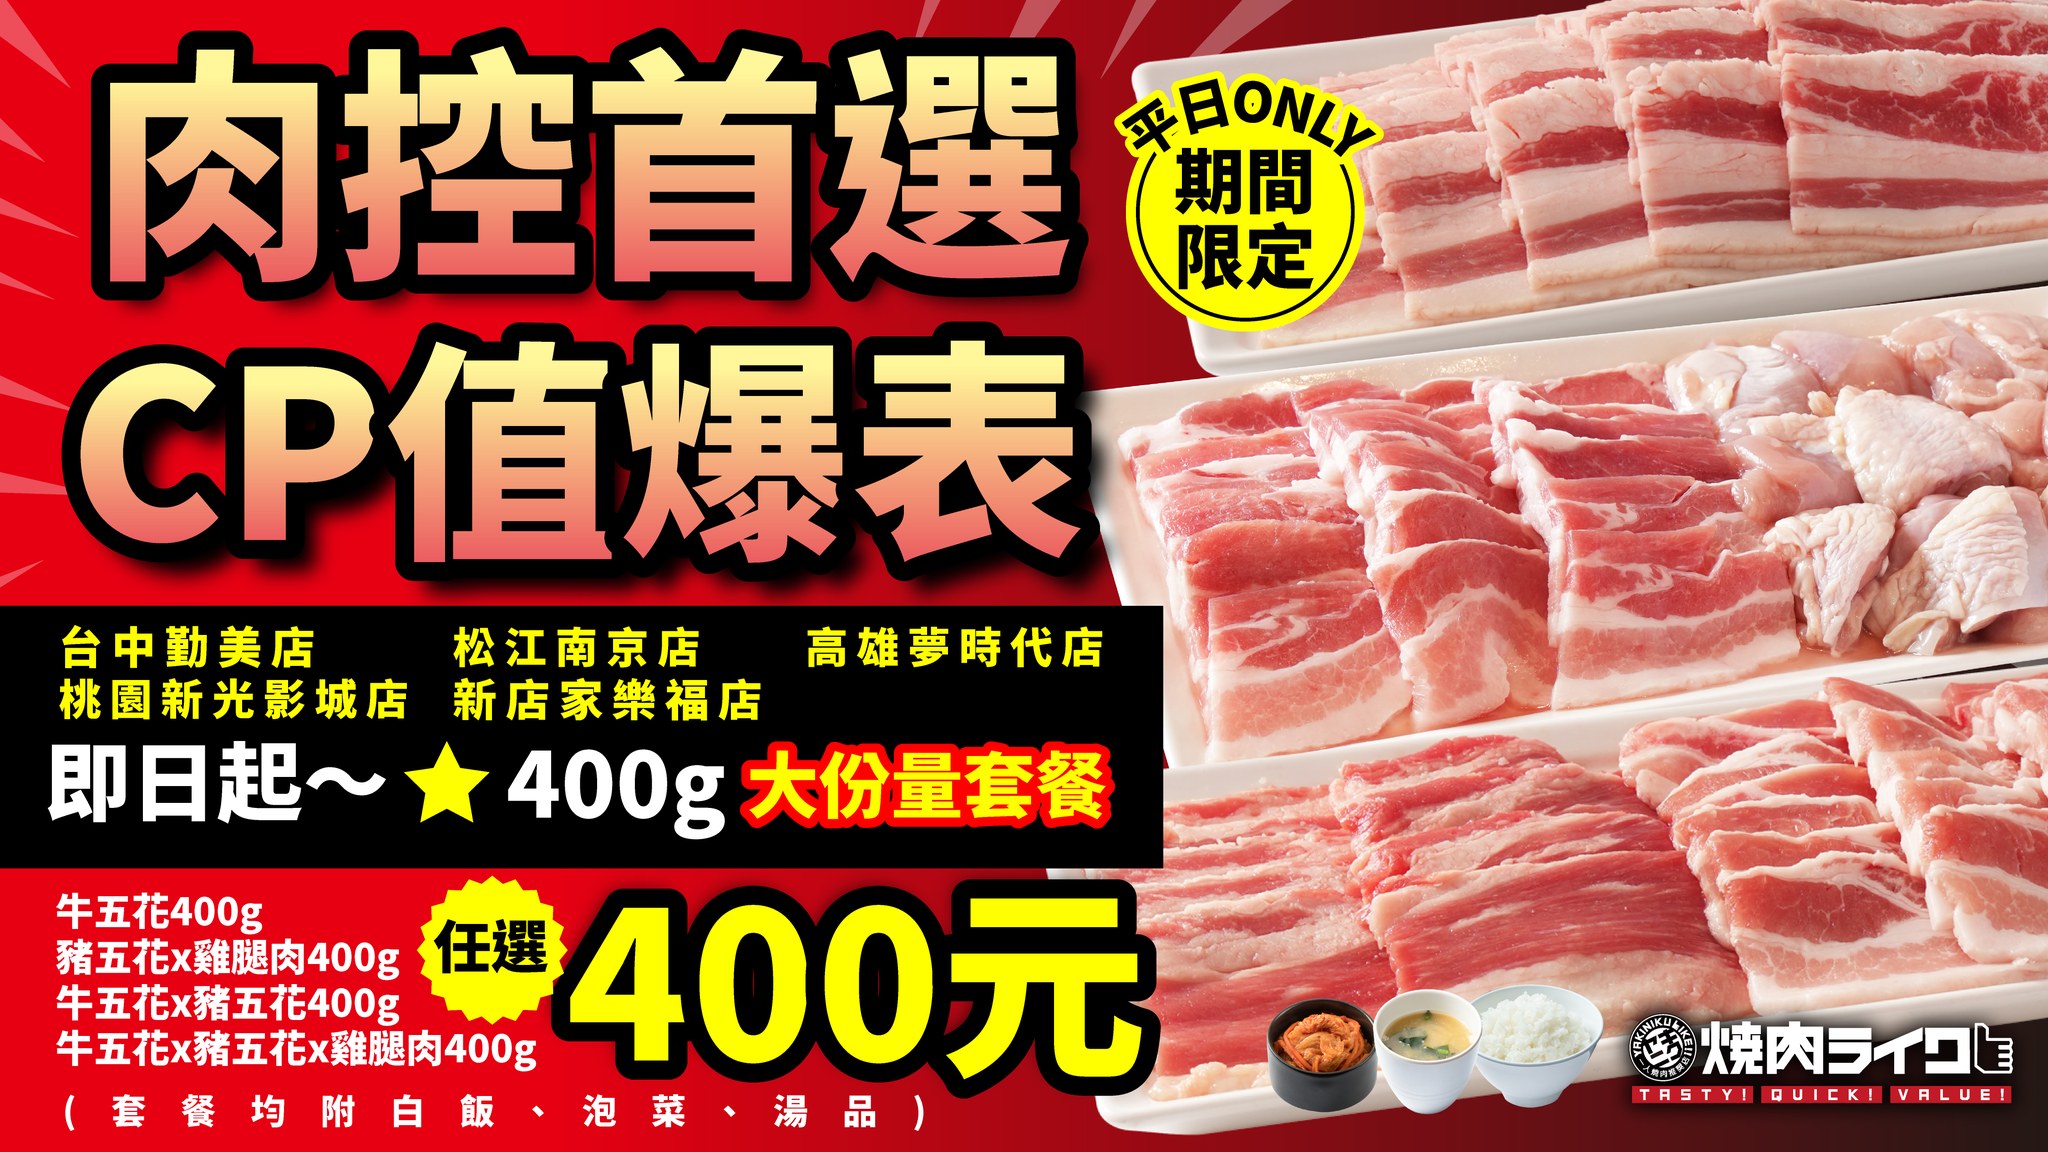 燒肉LIKE 松江南京店 | 燒肉LIKE套餐180元起一人也能吃(菜單) @女子的休假計劃